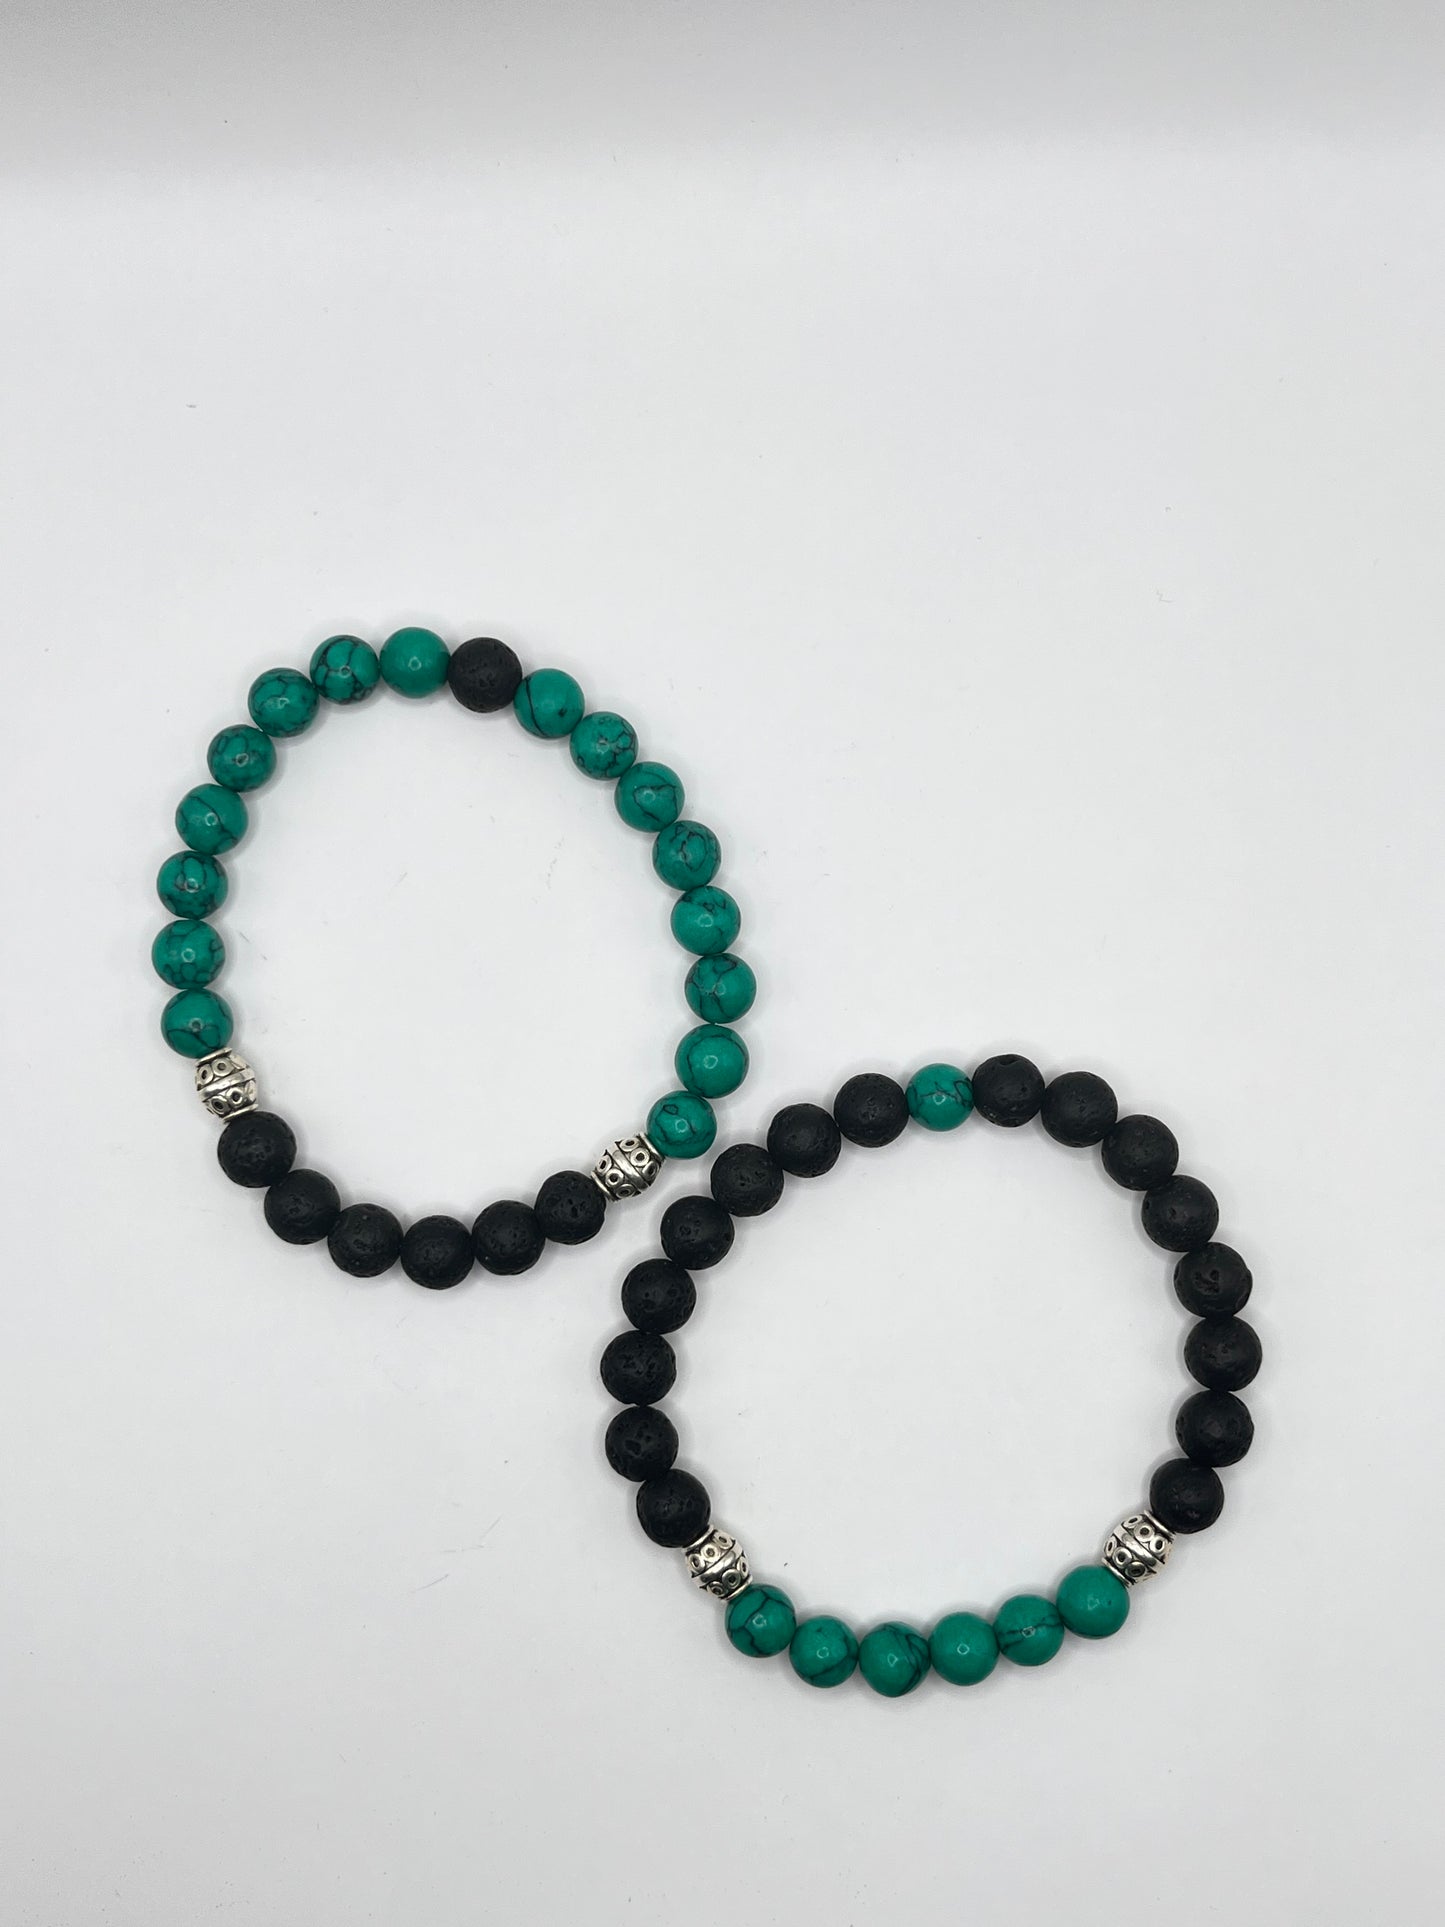 Aromatherapy partner bracelet set of 2